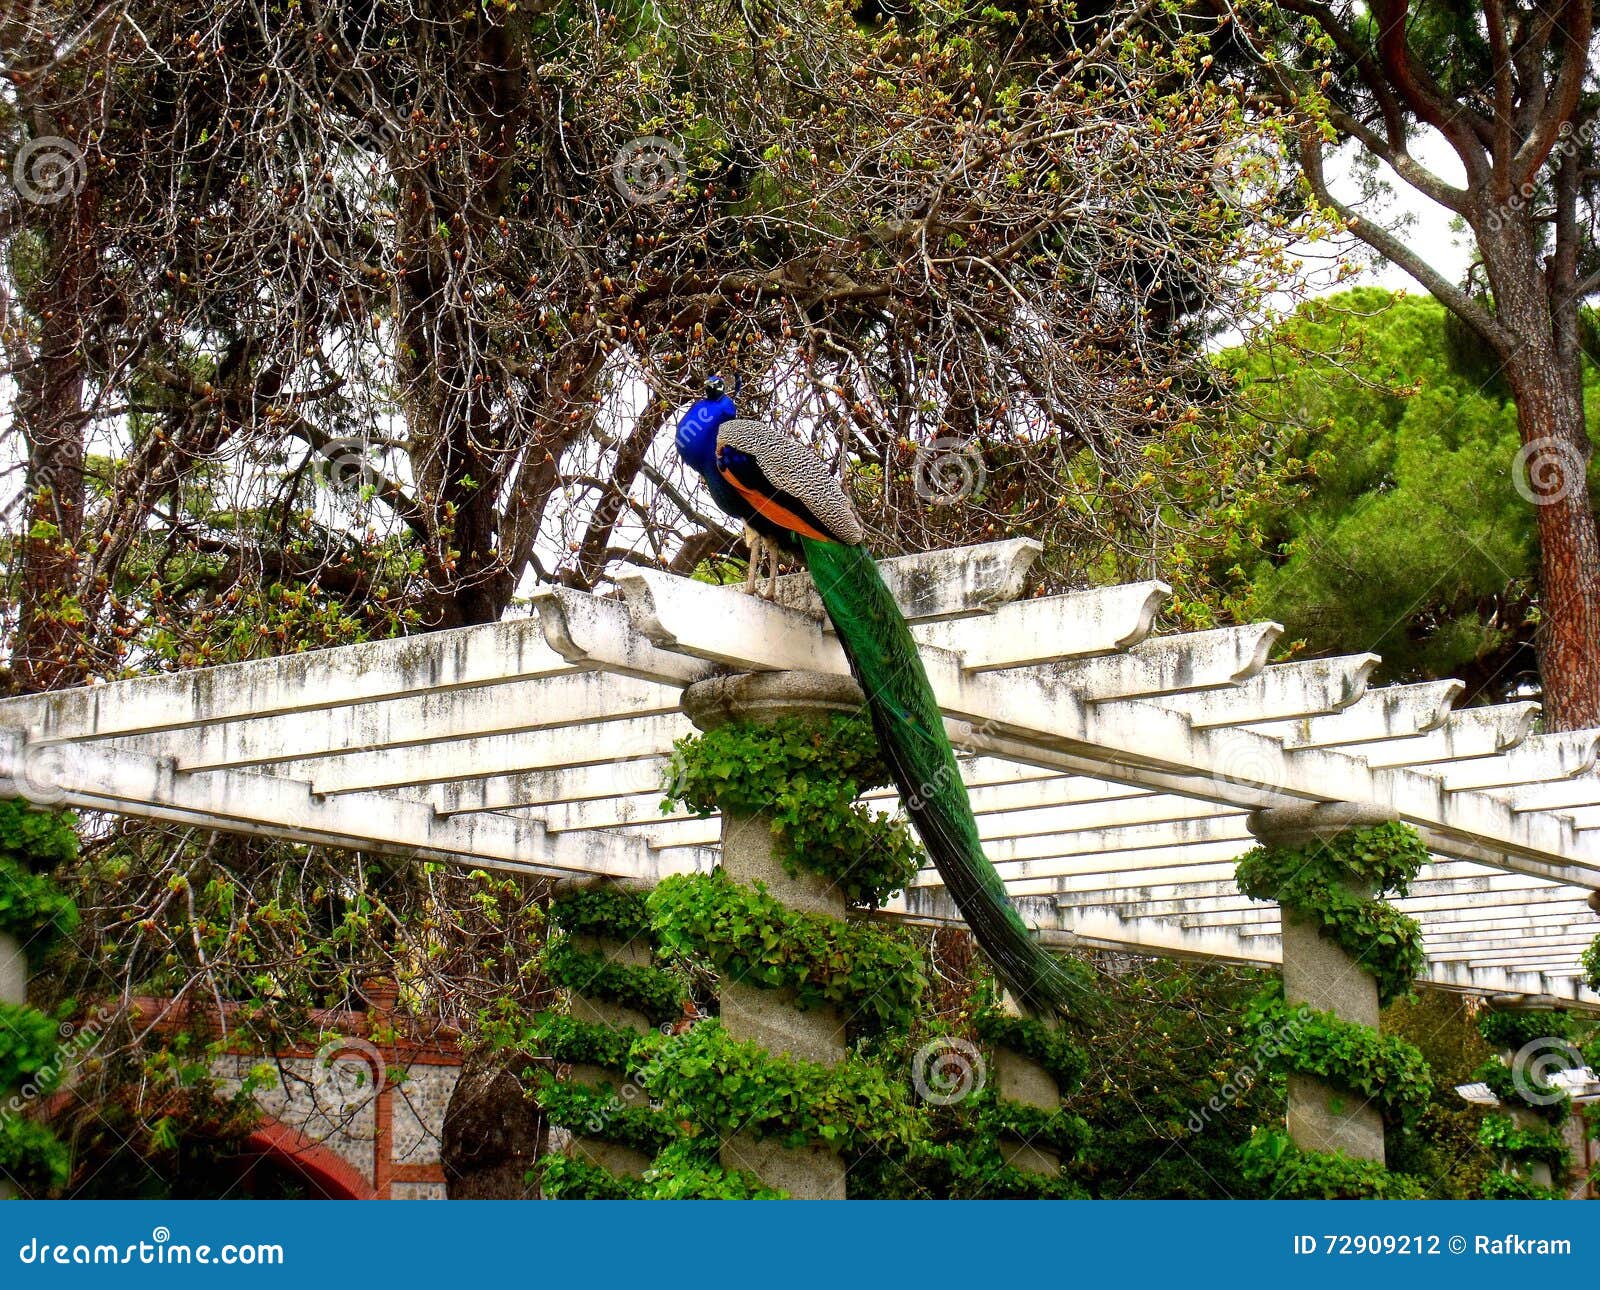 peacock in cecilio rodriguez garden,retiro parkmadrid